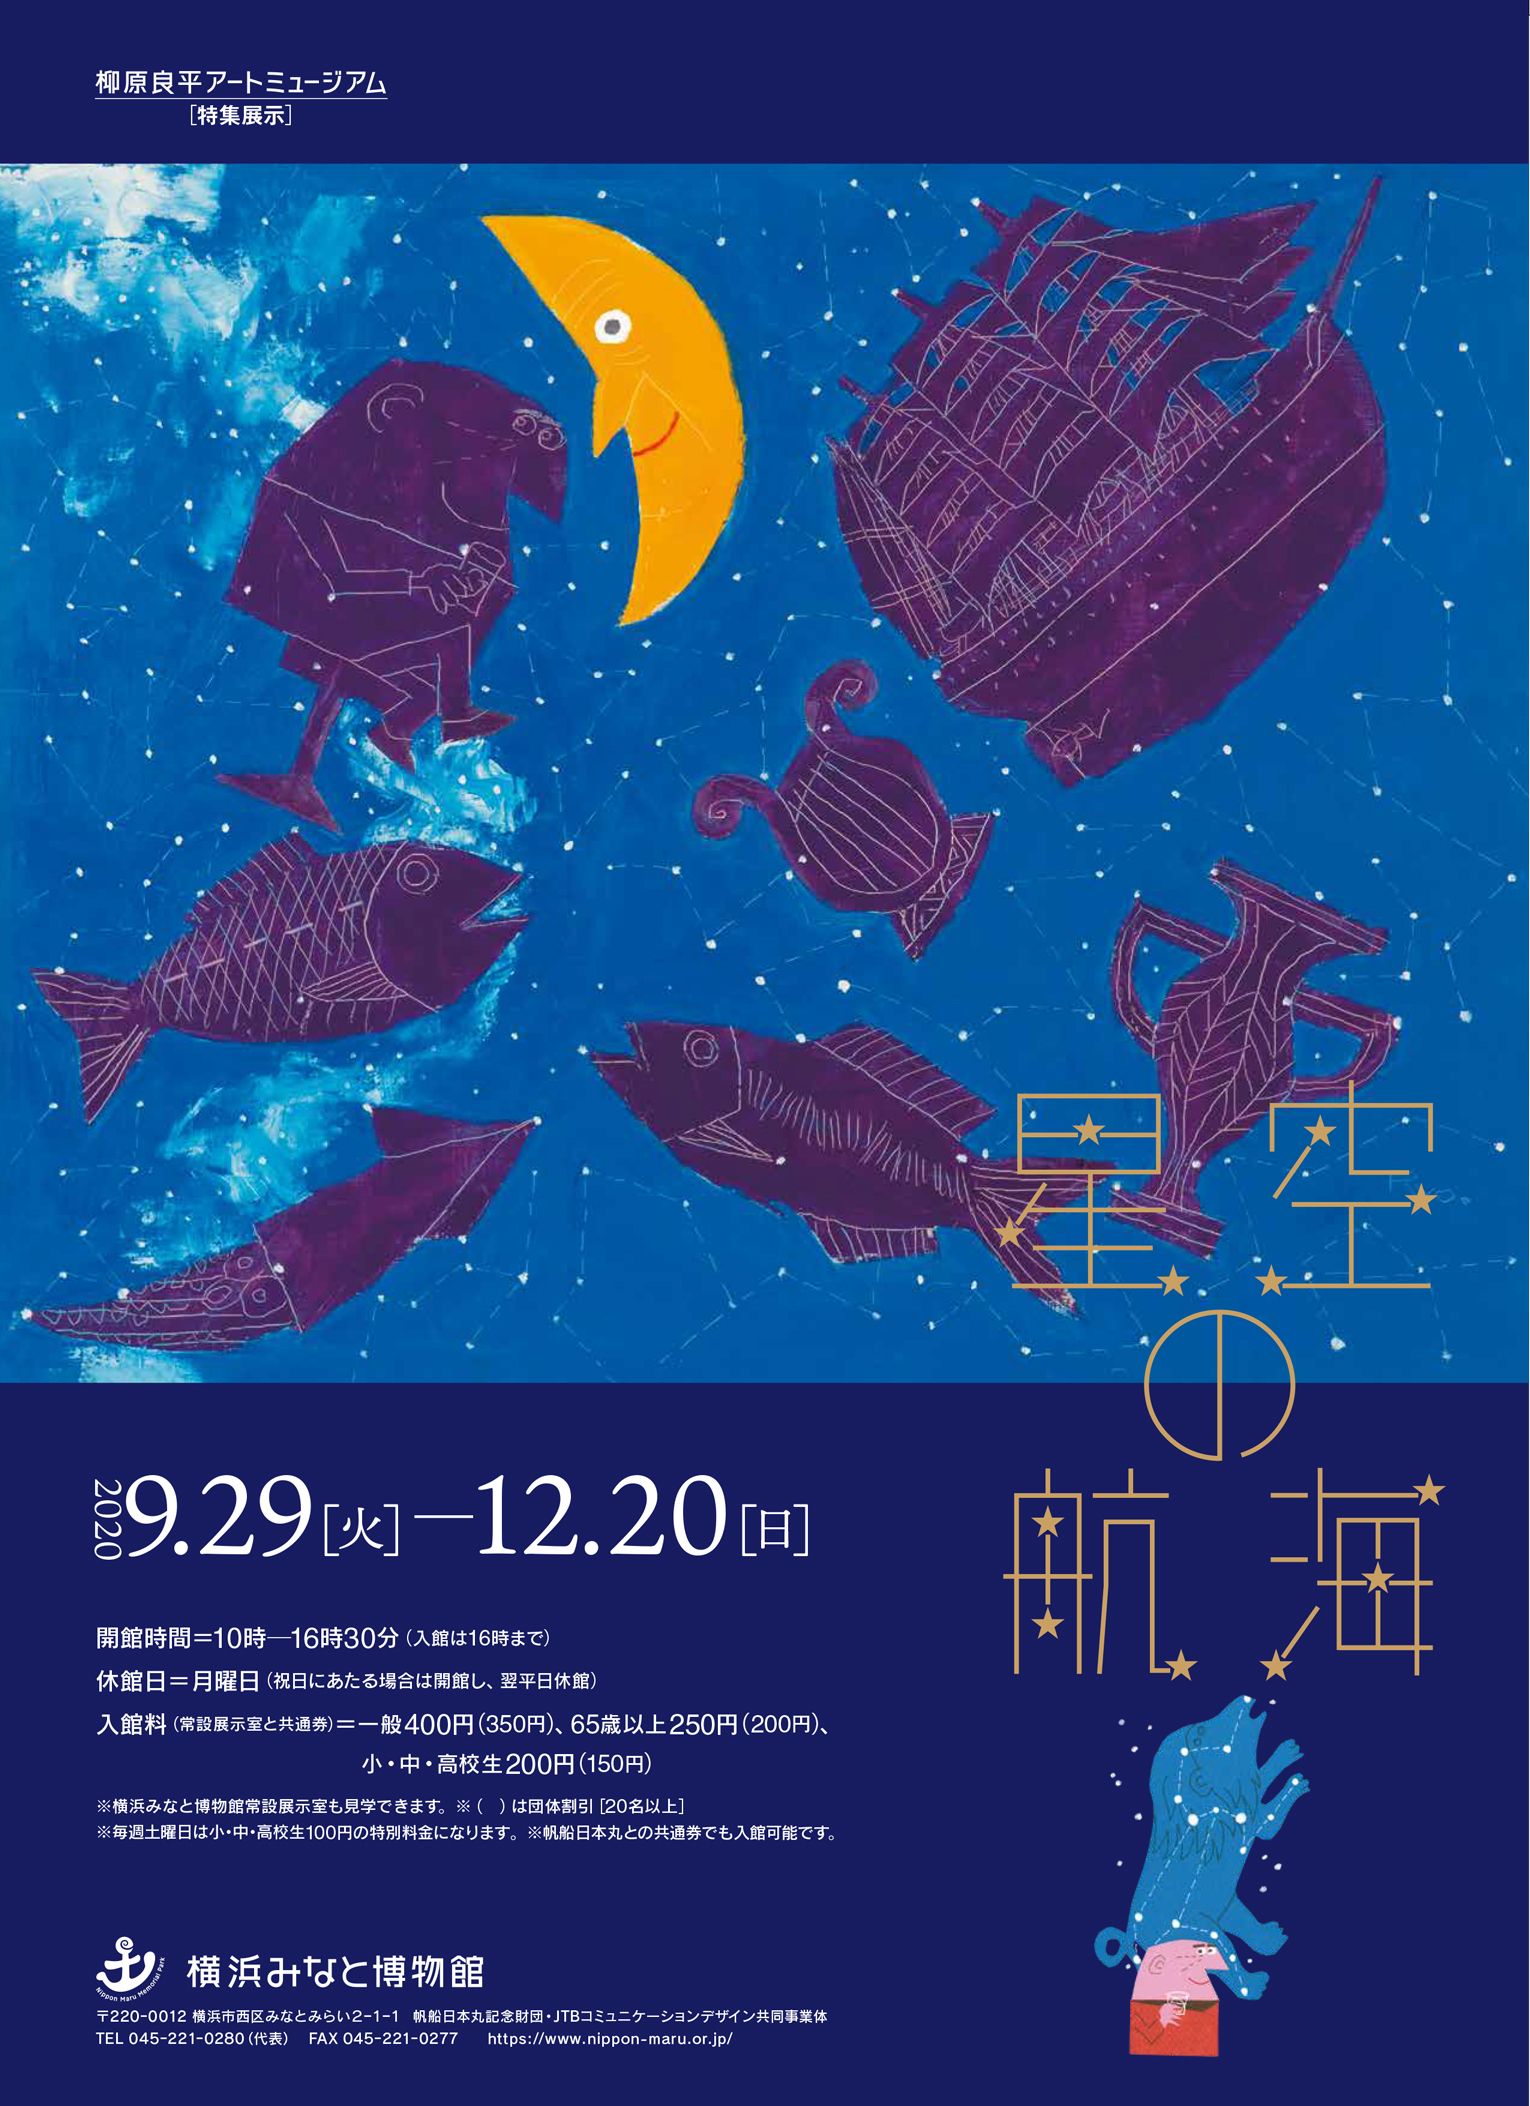 柳原良平アートミュージアム特集展示 星空の航海 帆船日本丸 横浜みなと博物館